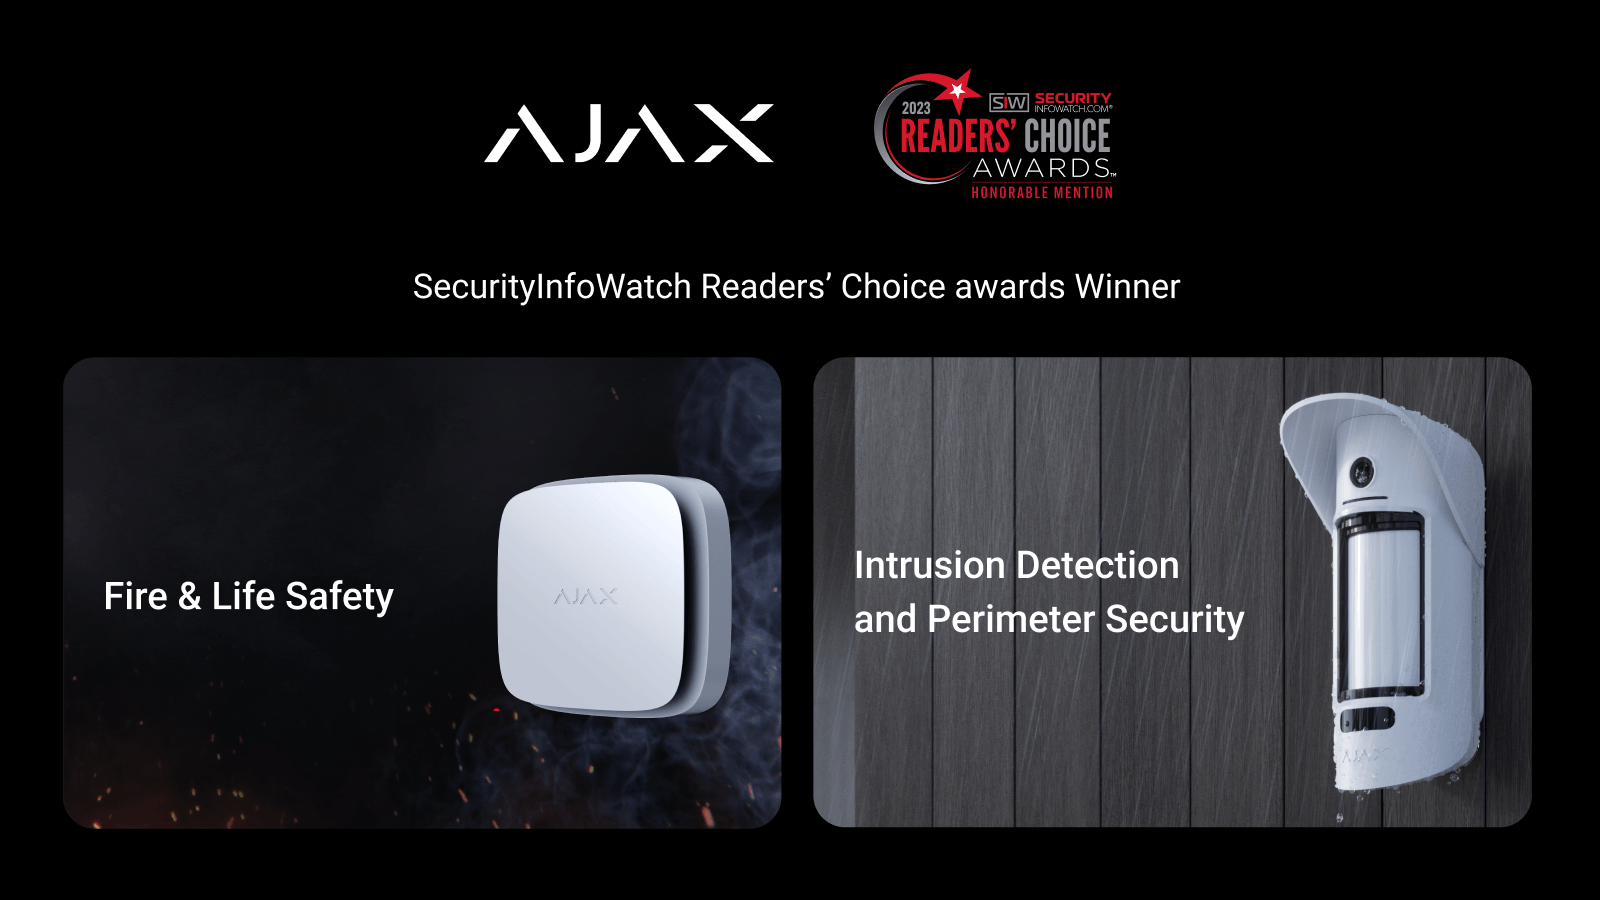 Ajax Systems zwycięża w 2 kategoriach w SecurityInfoWatch.com Readers’ Choice Awards w USA